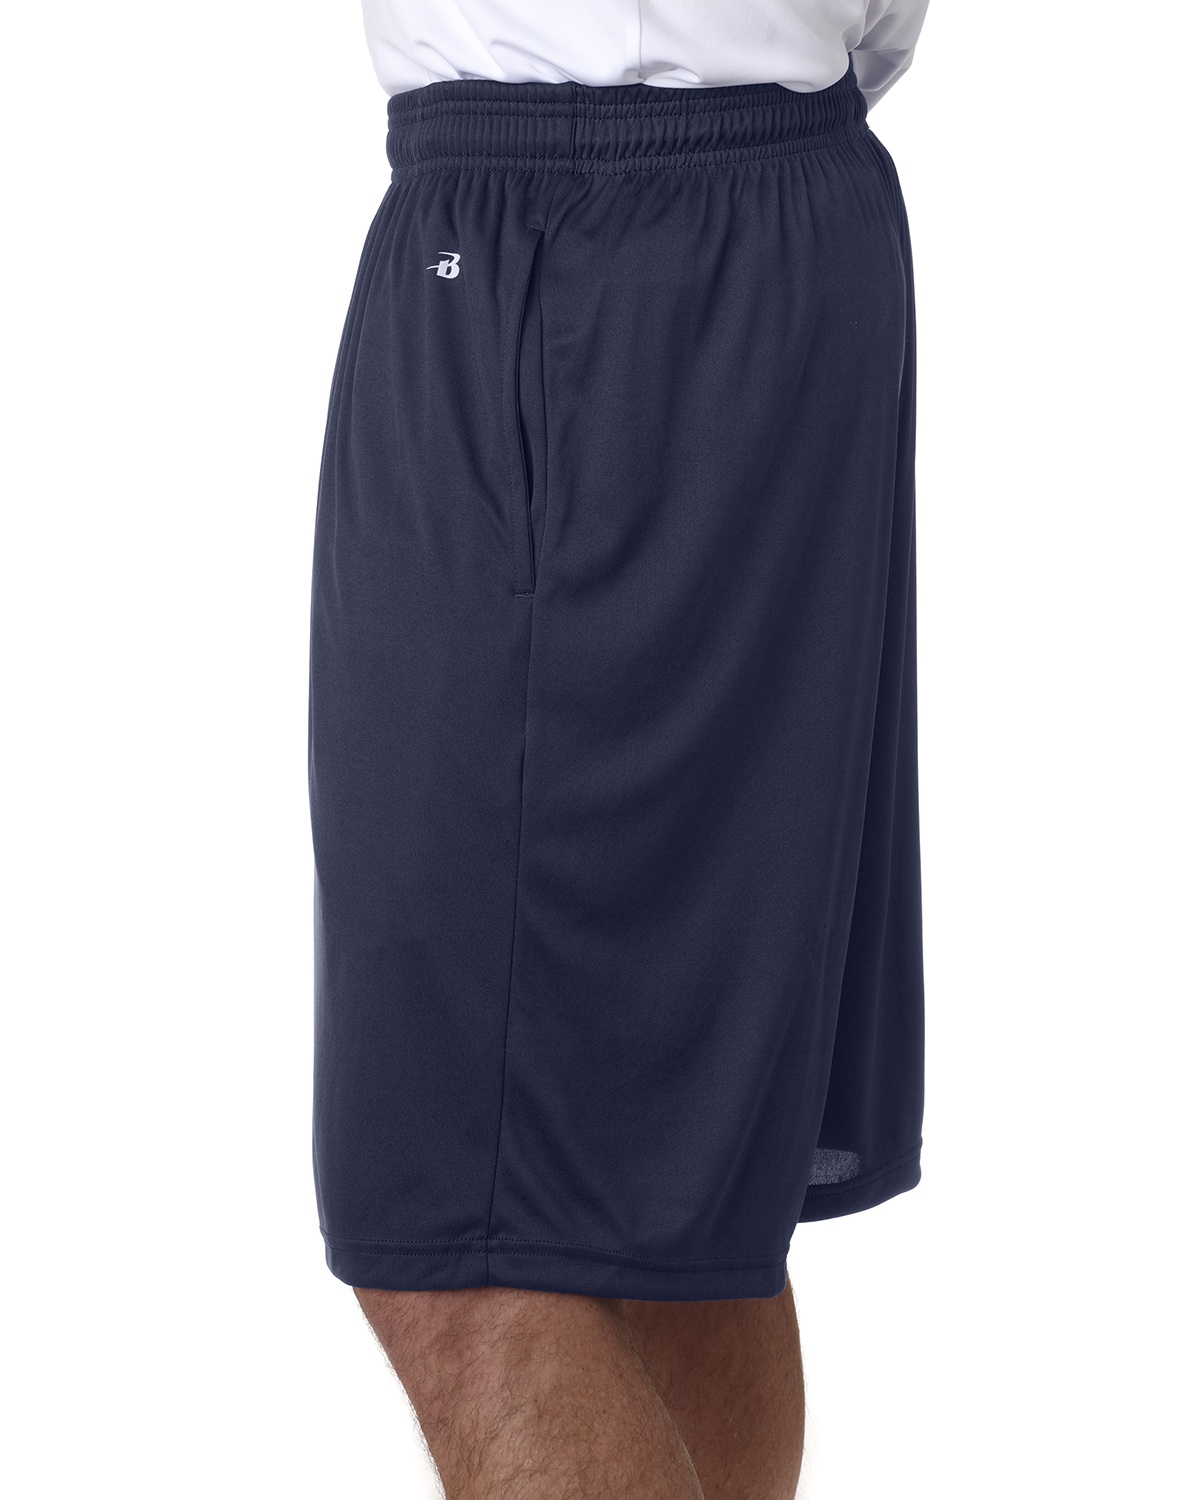 'Badger 4119 B-Core Pocketed Shorts'